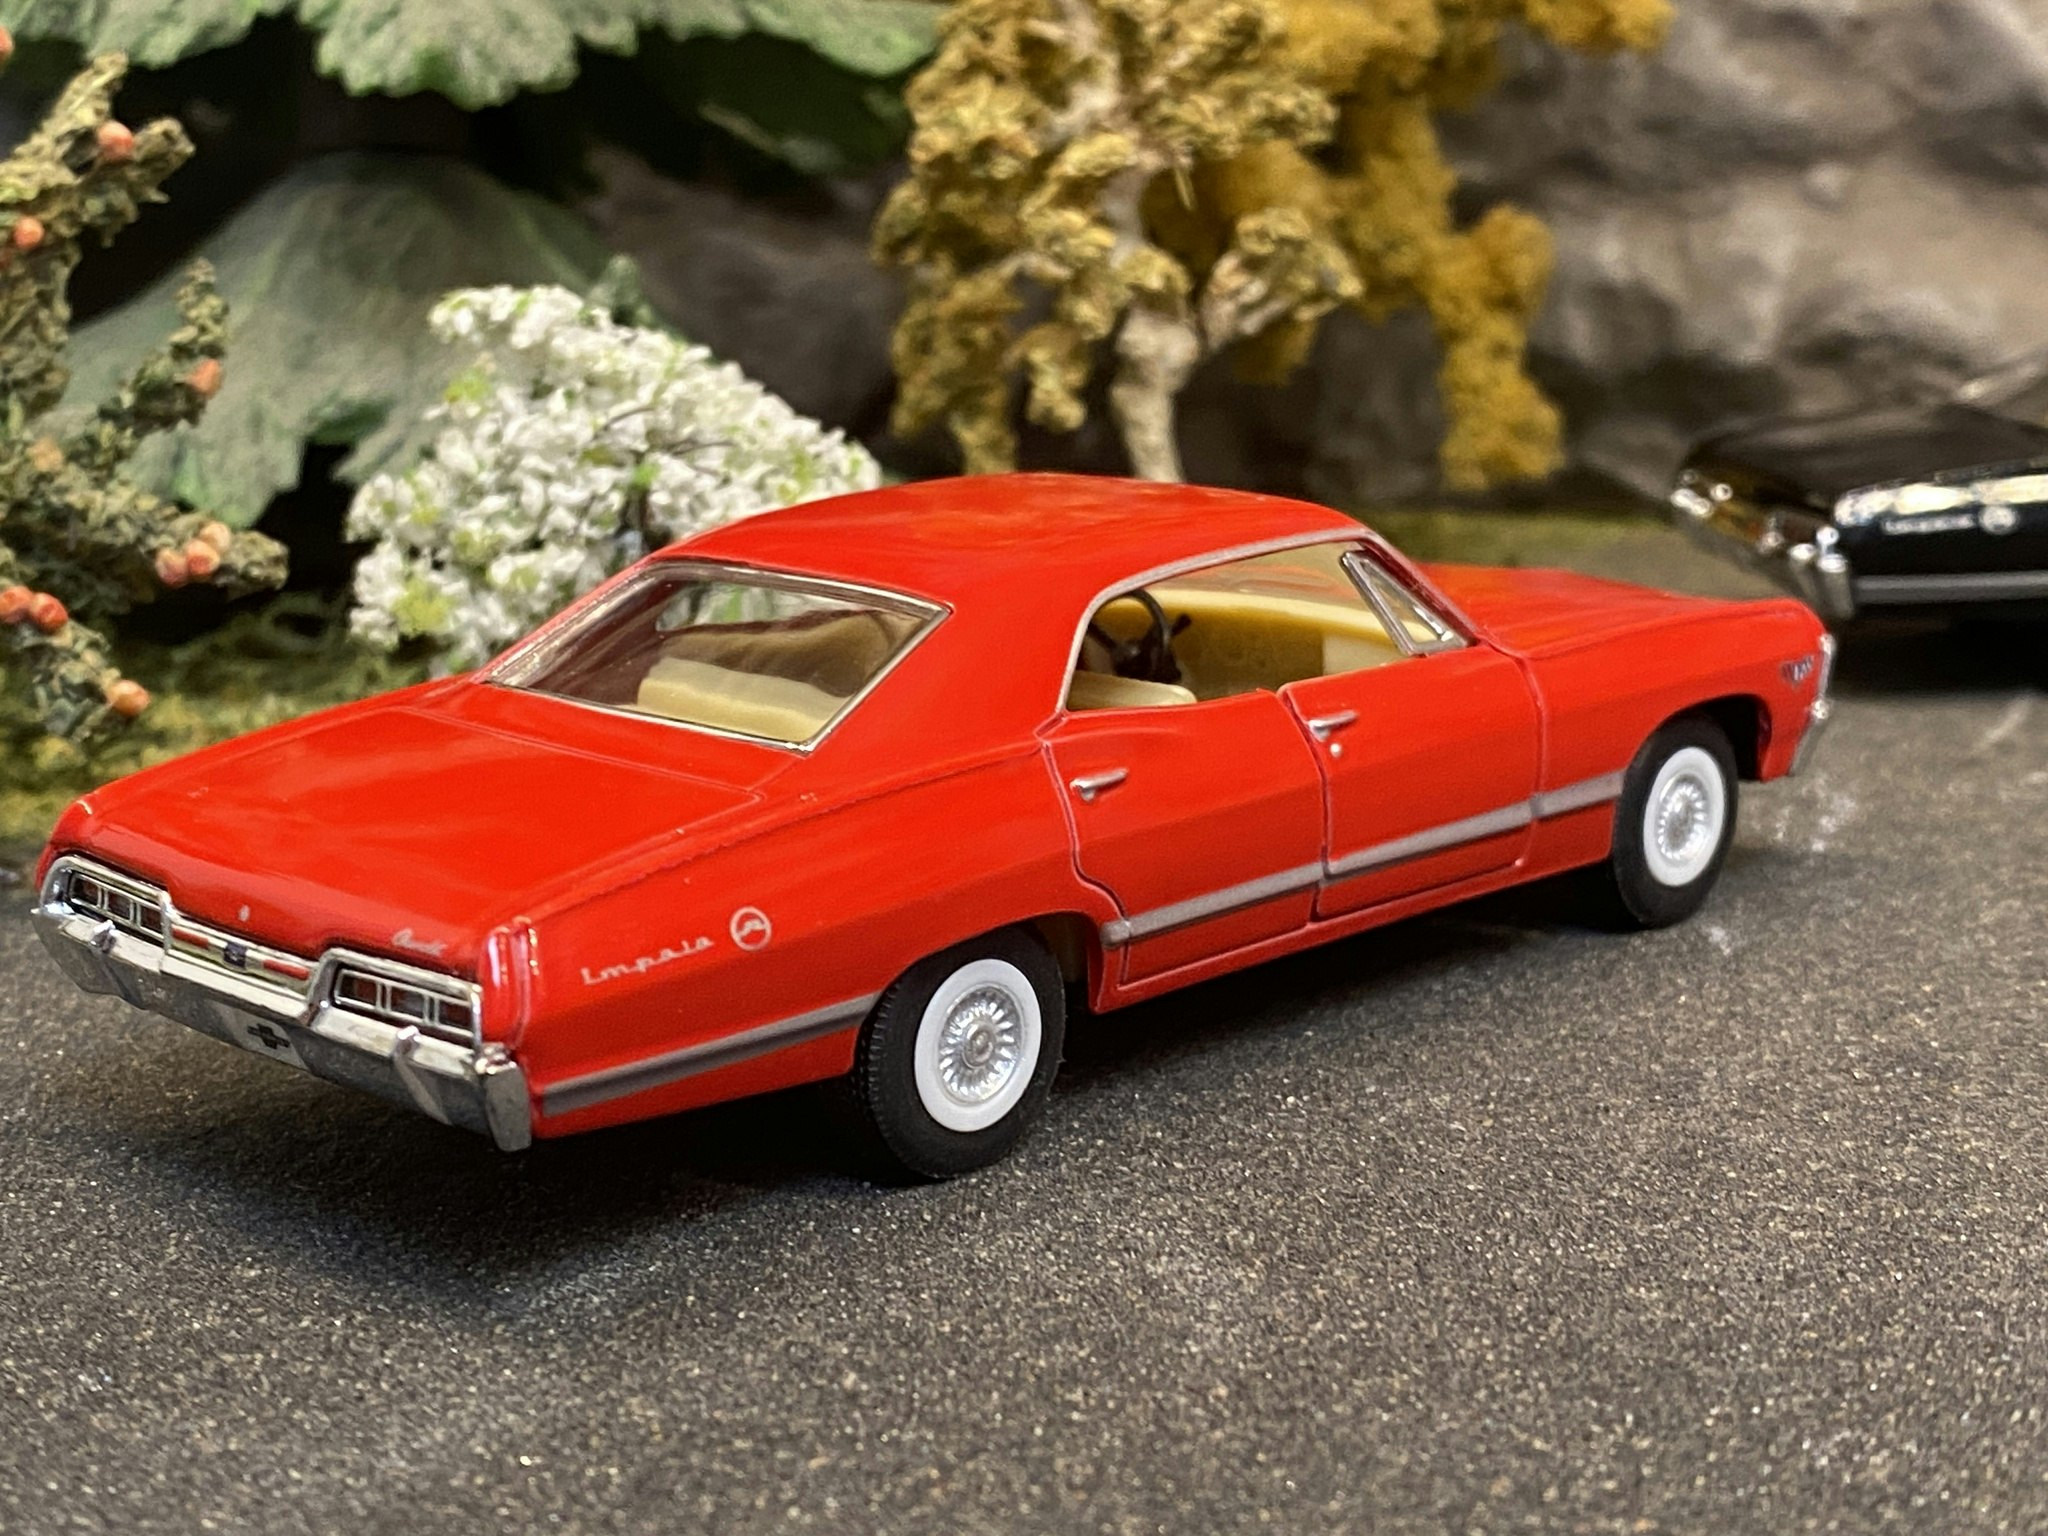 Skala 1/43 Chevrolet Impala 1967, Red fr Kinsmart